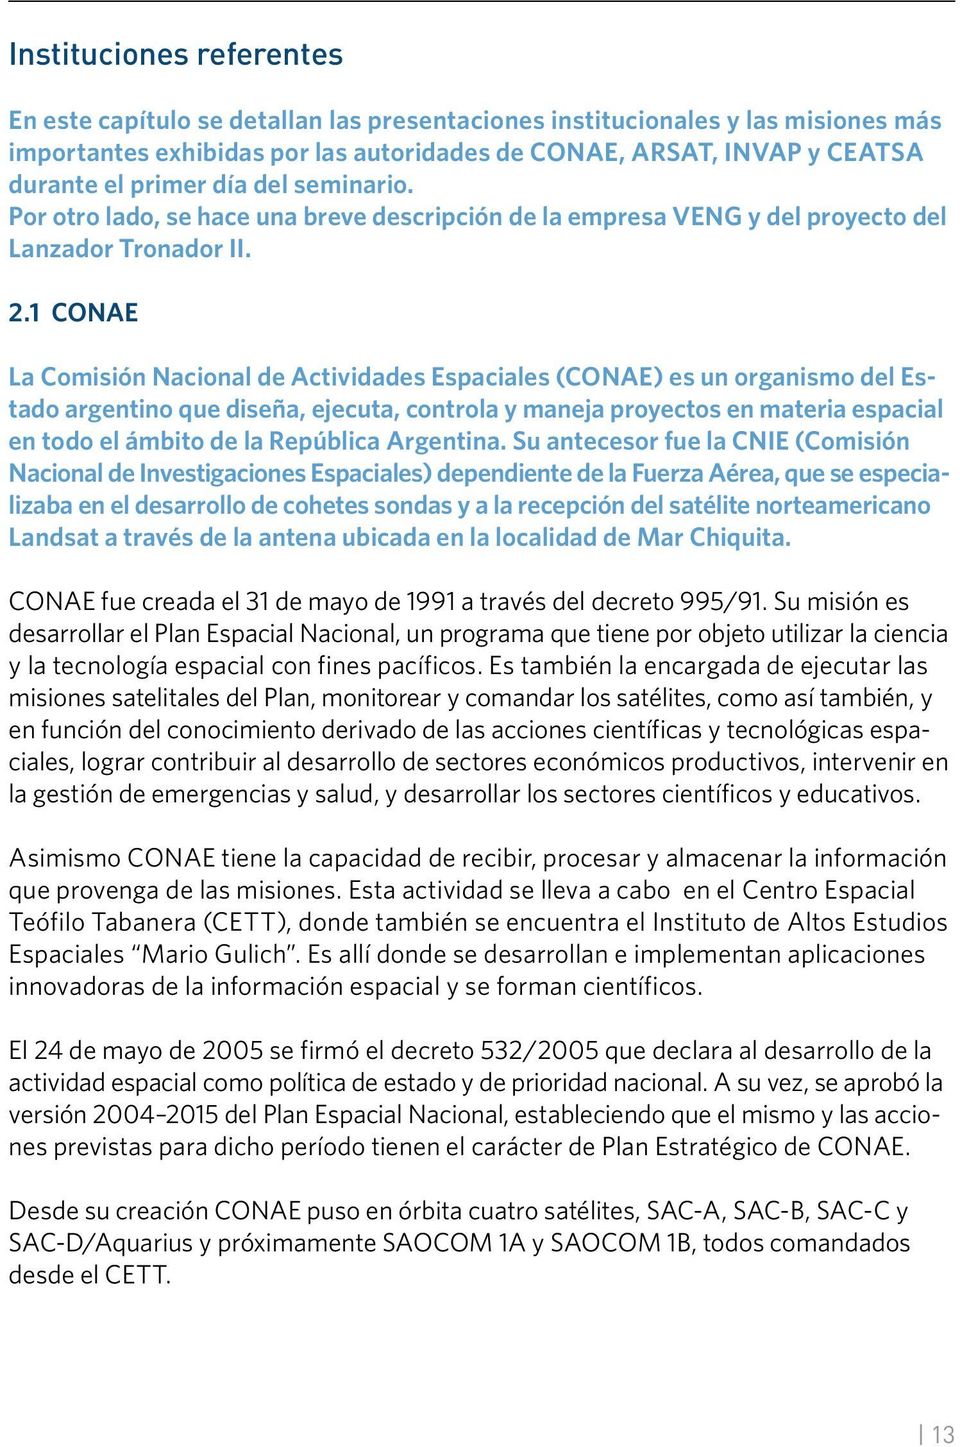 1 CONAE La Comisión Nacional de Actividades Espaciales (CONAE) es un organismo del Estado argentino que diseña, ejecuta, controla y maneja proyectos en materia espacial en todo el ámbito de la